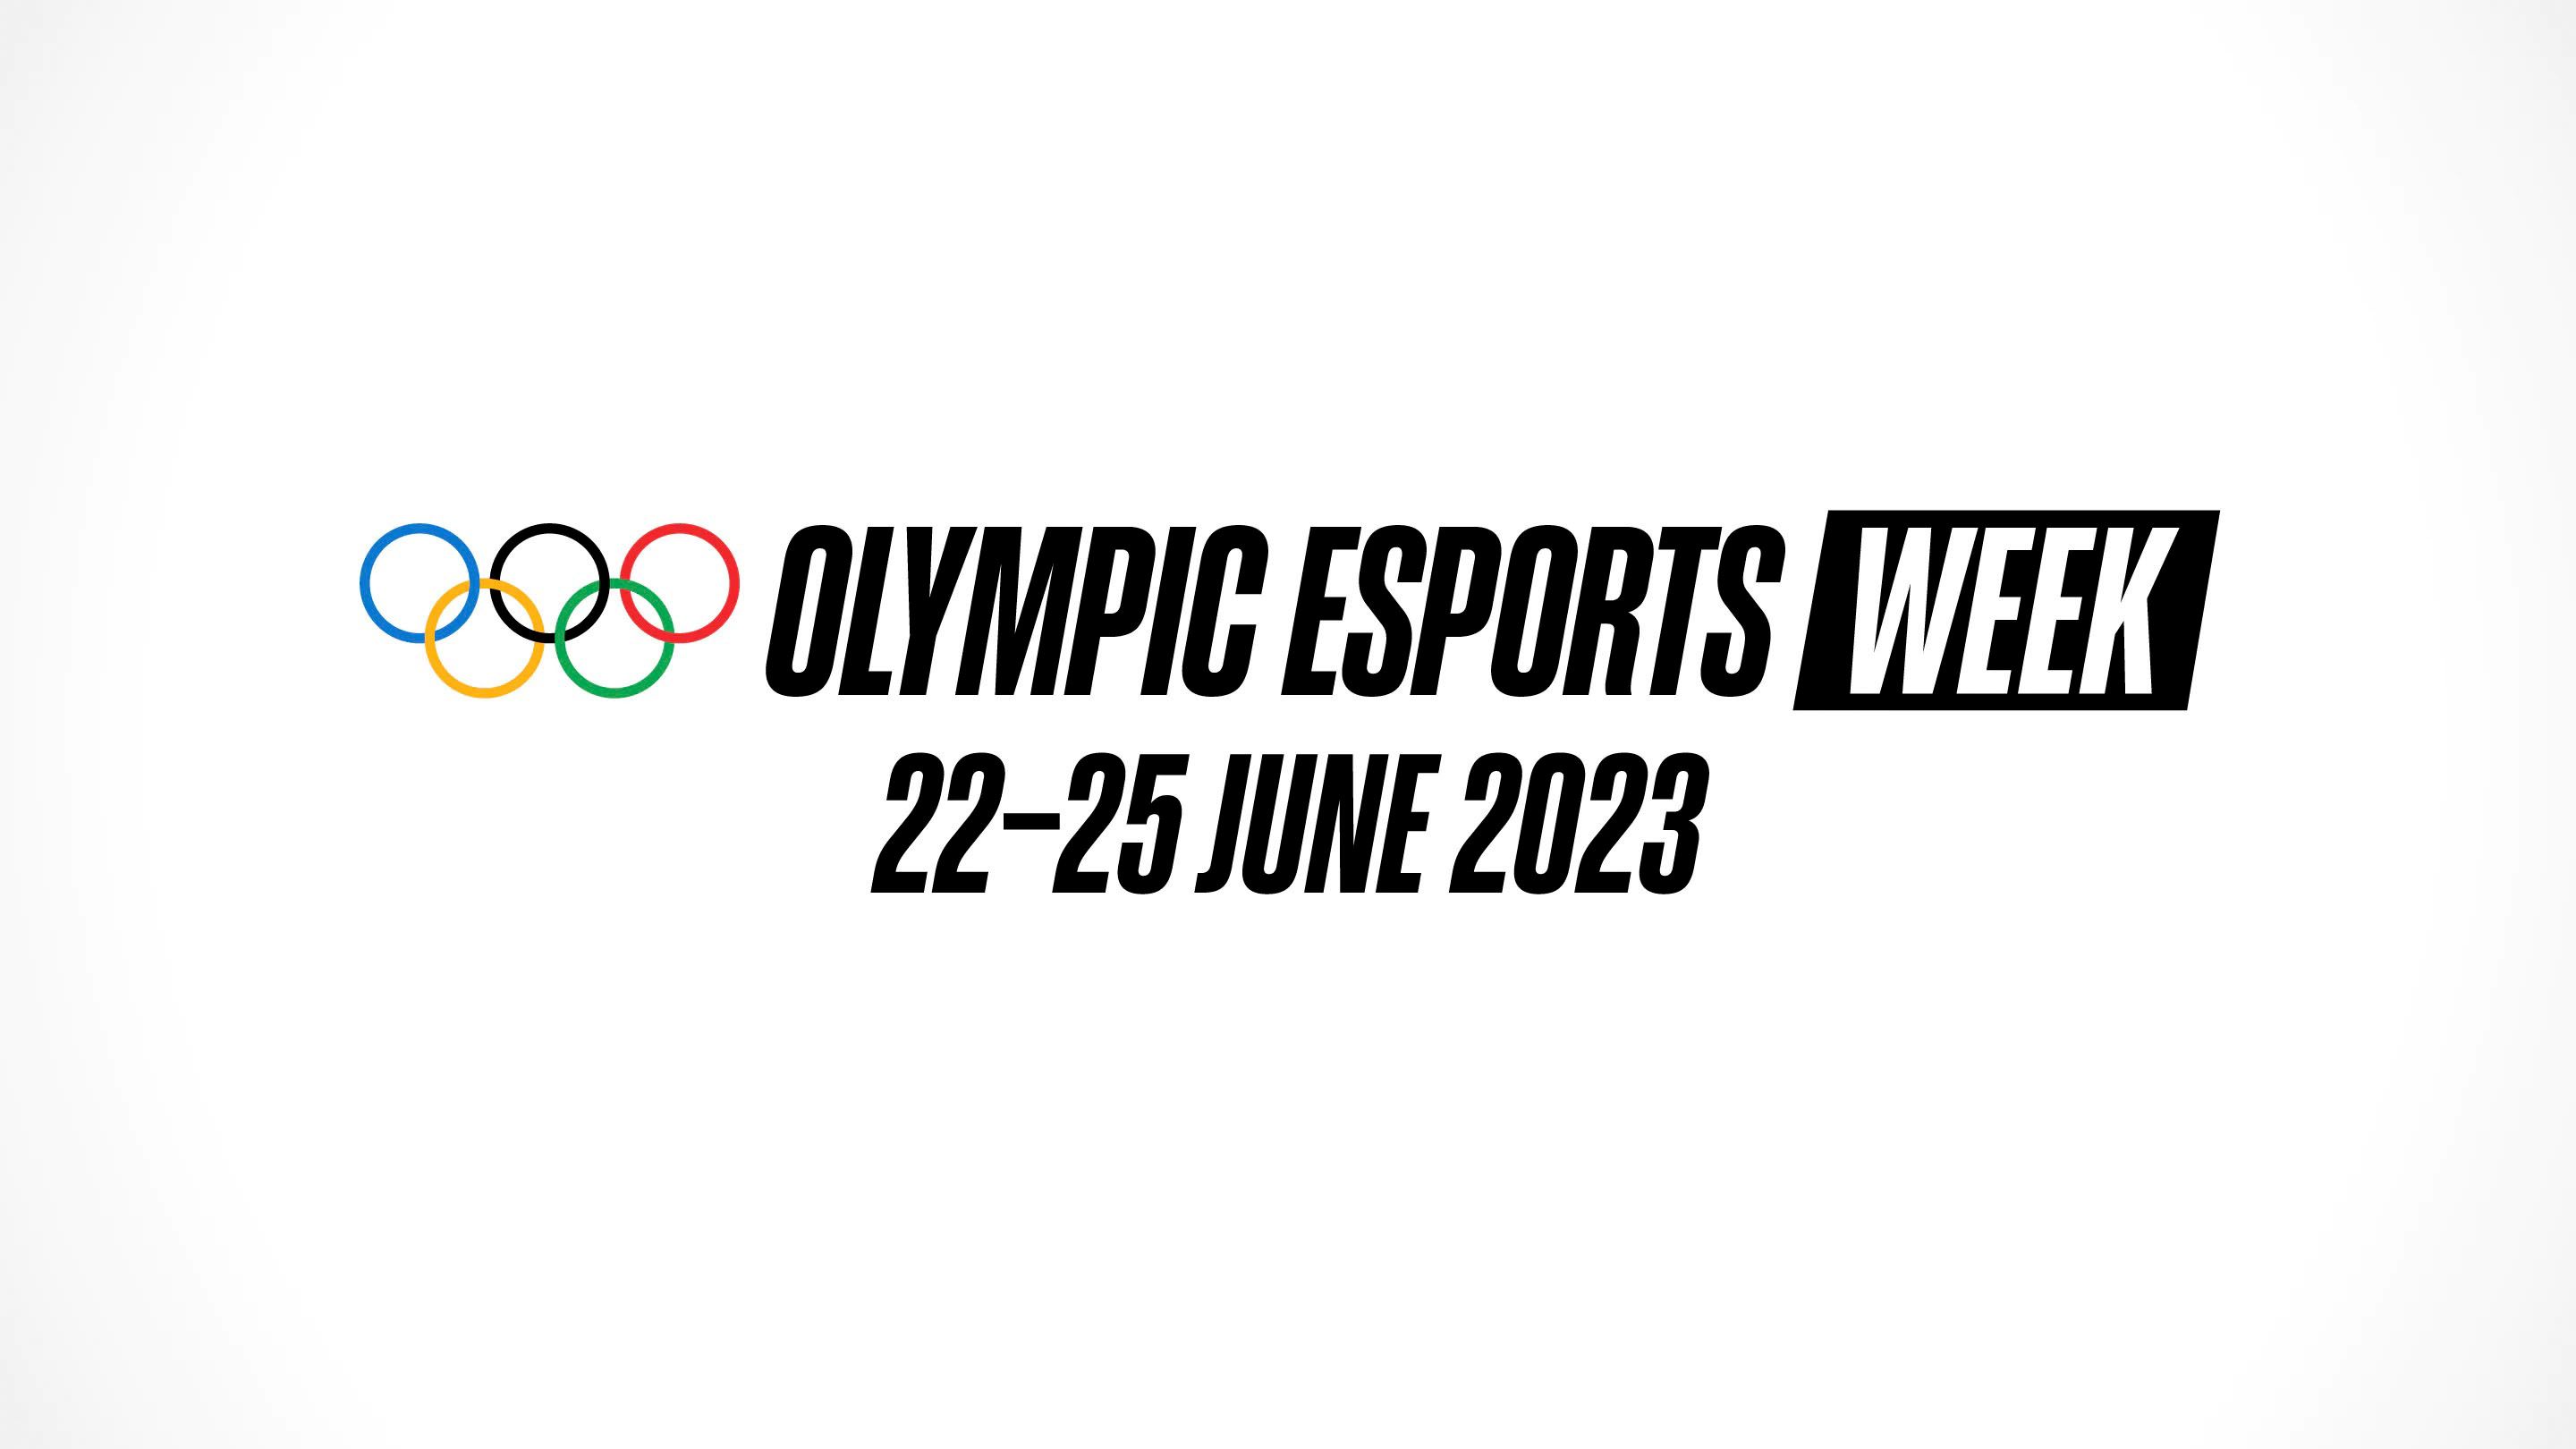 Singapore Olympic Esports Week 2023 Dates